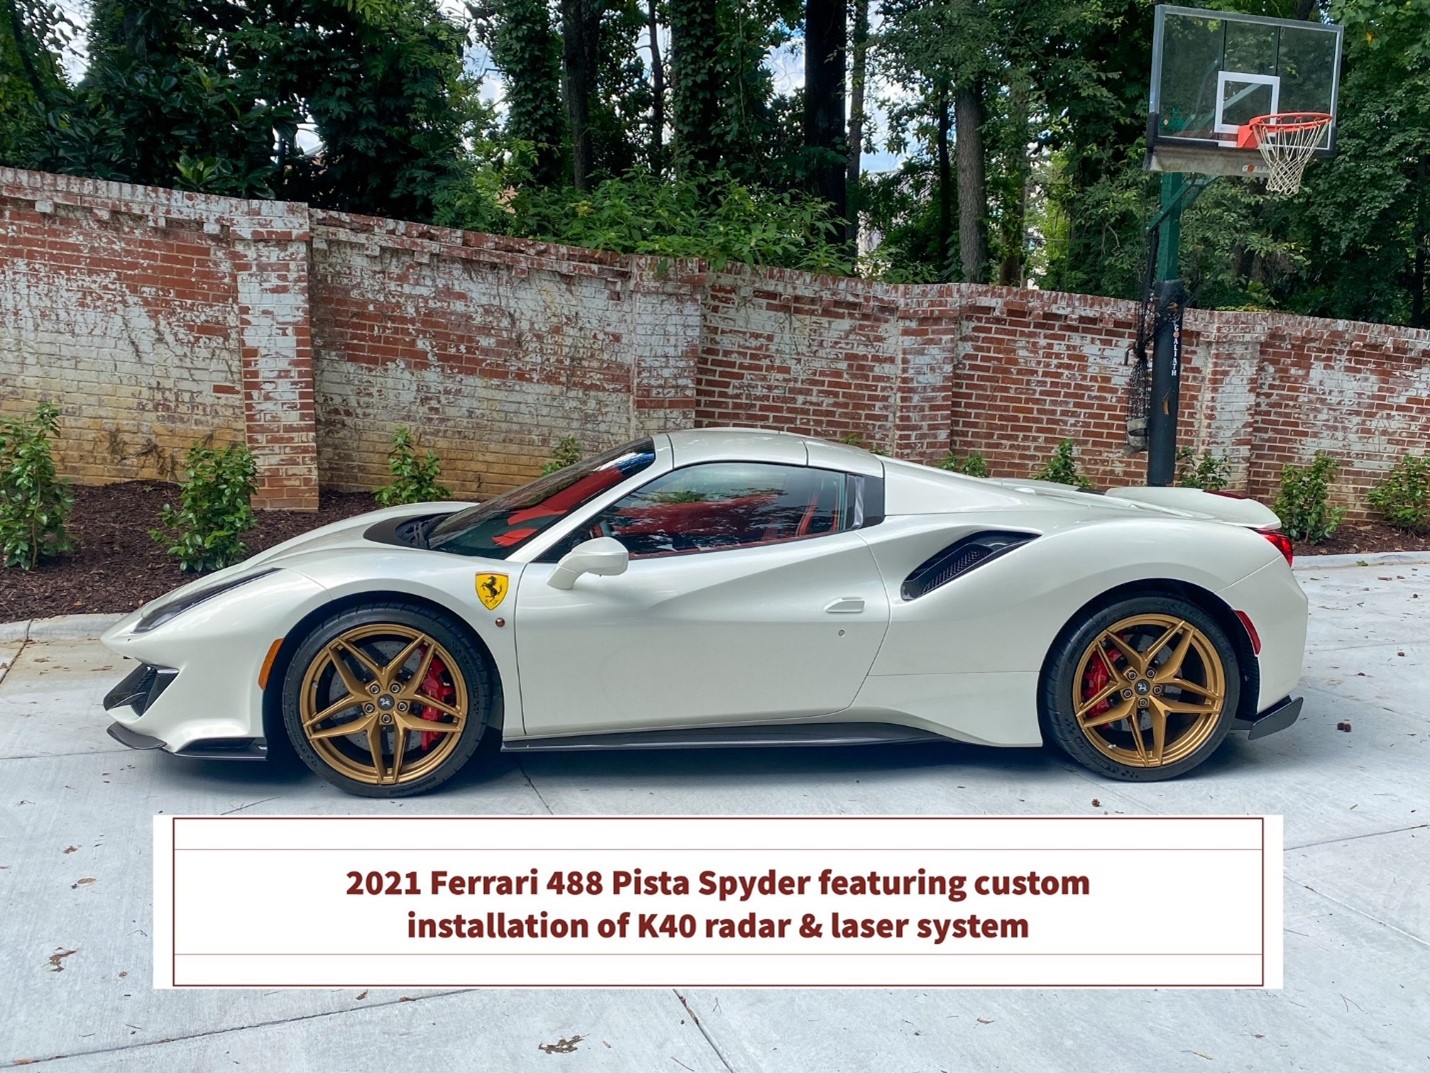 2021 Ferrari 488 Pista Spyder featuring a custom installation of a K40 radar & laser system.